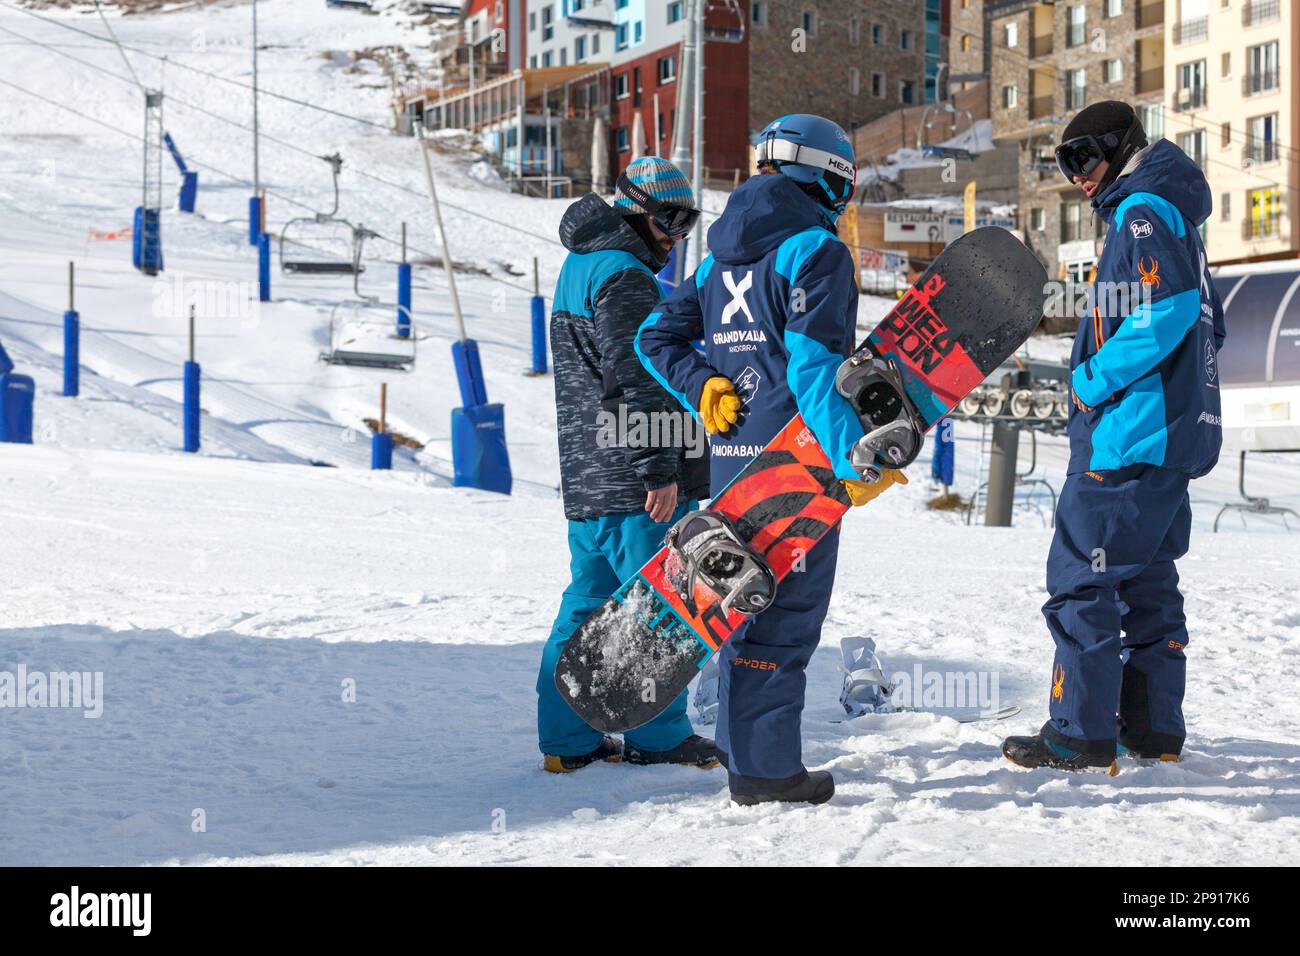 Pas de la Casa, Andorra, Dezember 02 2019: Snowboardlehrer machen eine Einführung auf der Skipiste von Grandvalira vor dem Beginn ihrer Kurse. Stockfoto